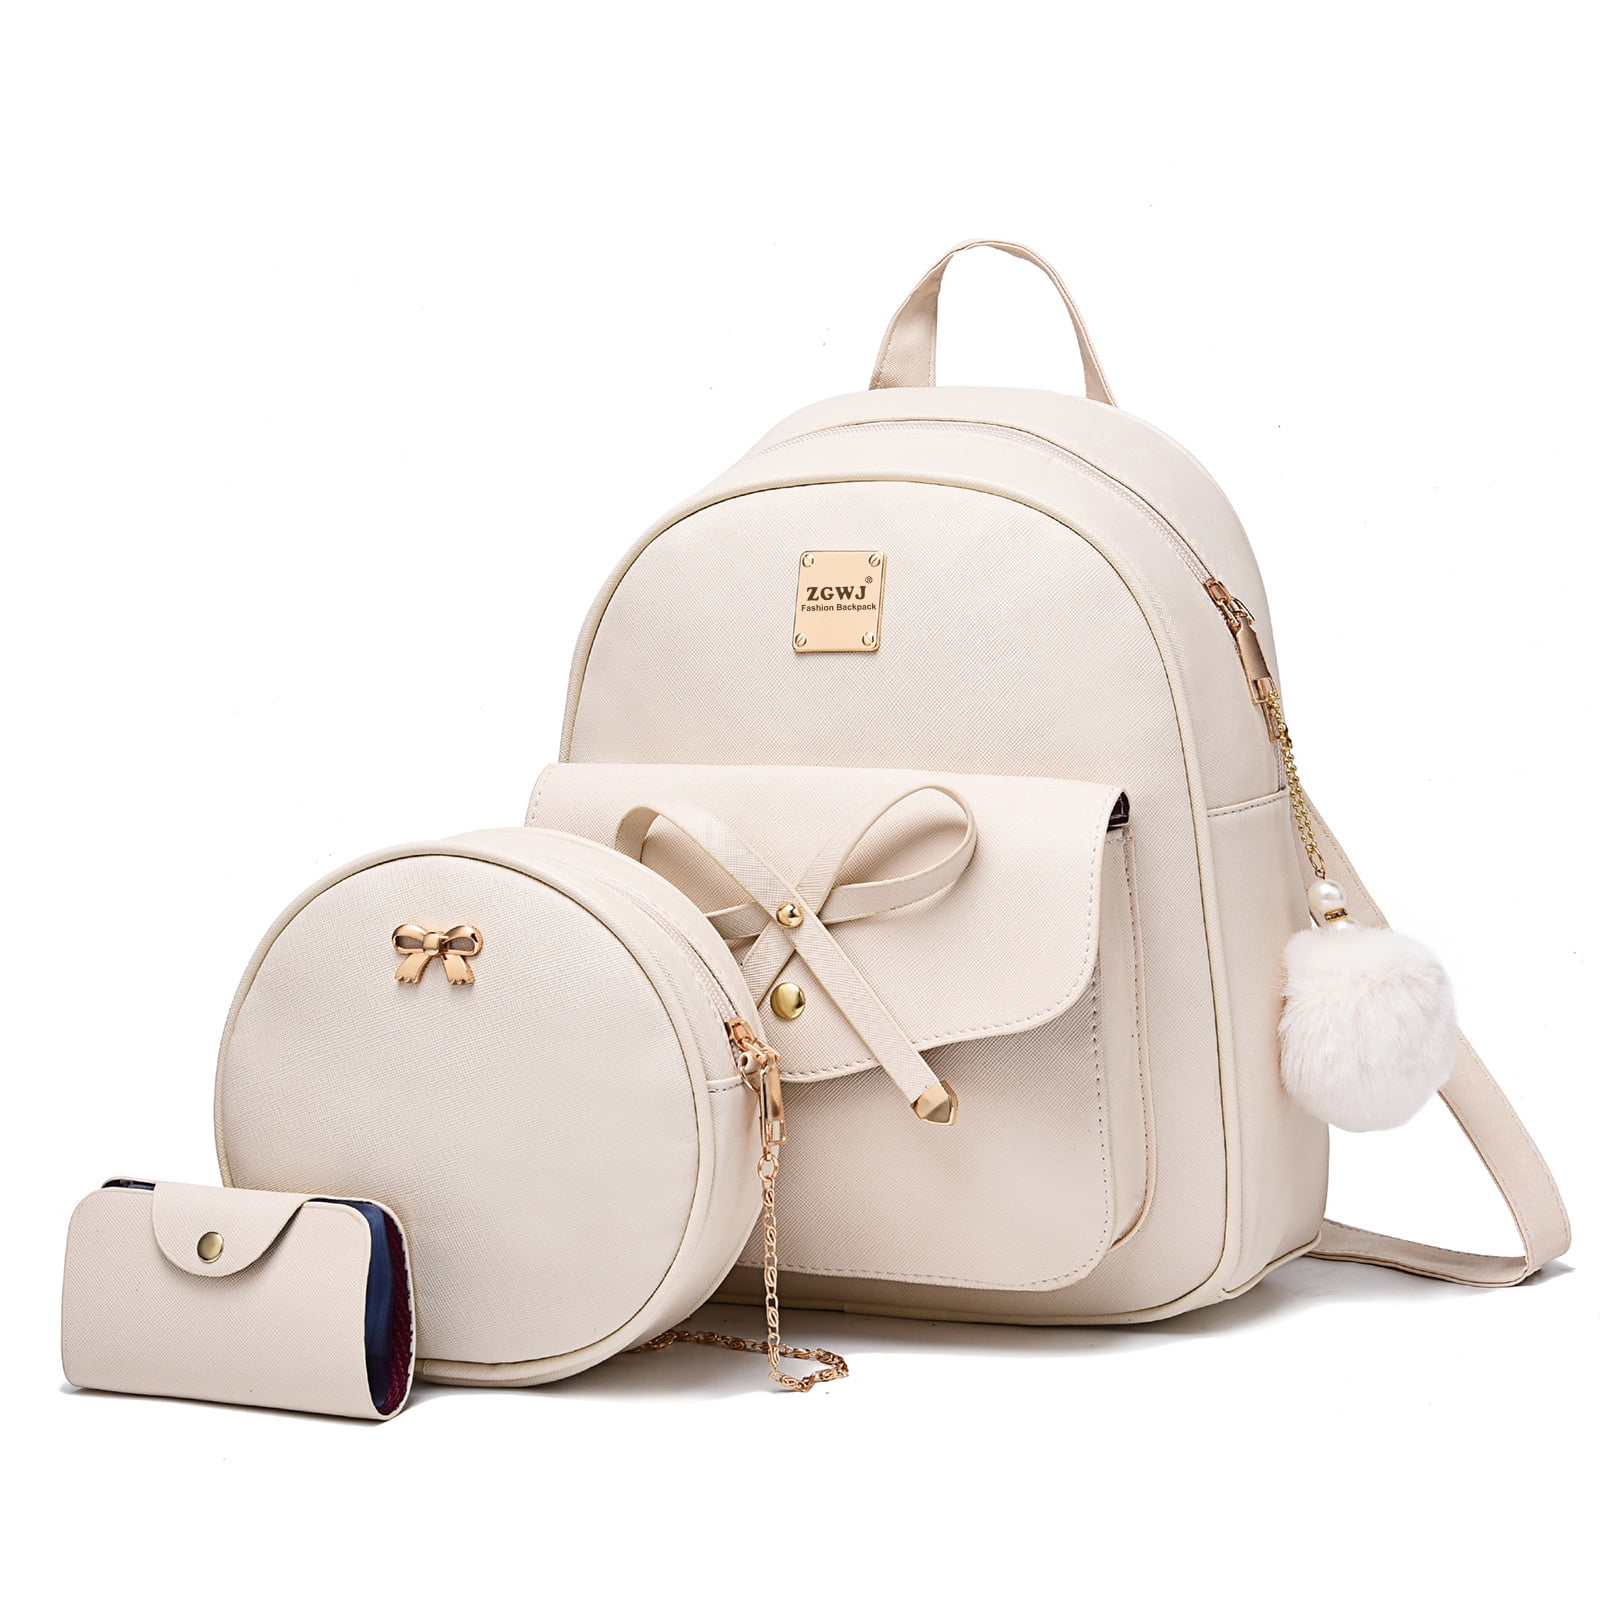 Cheruty Mini Backpack for Women Cute Bowknot Small Backpack Purse Girls  Leather Bookbag Beige - Walmart.com